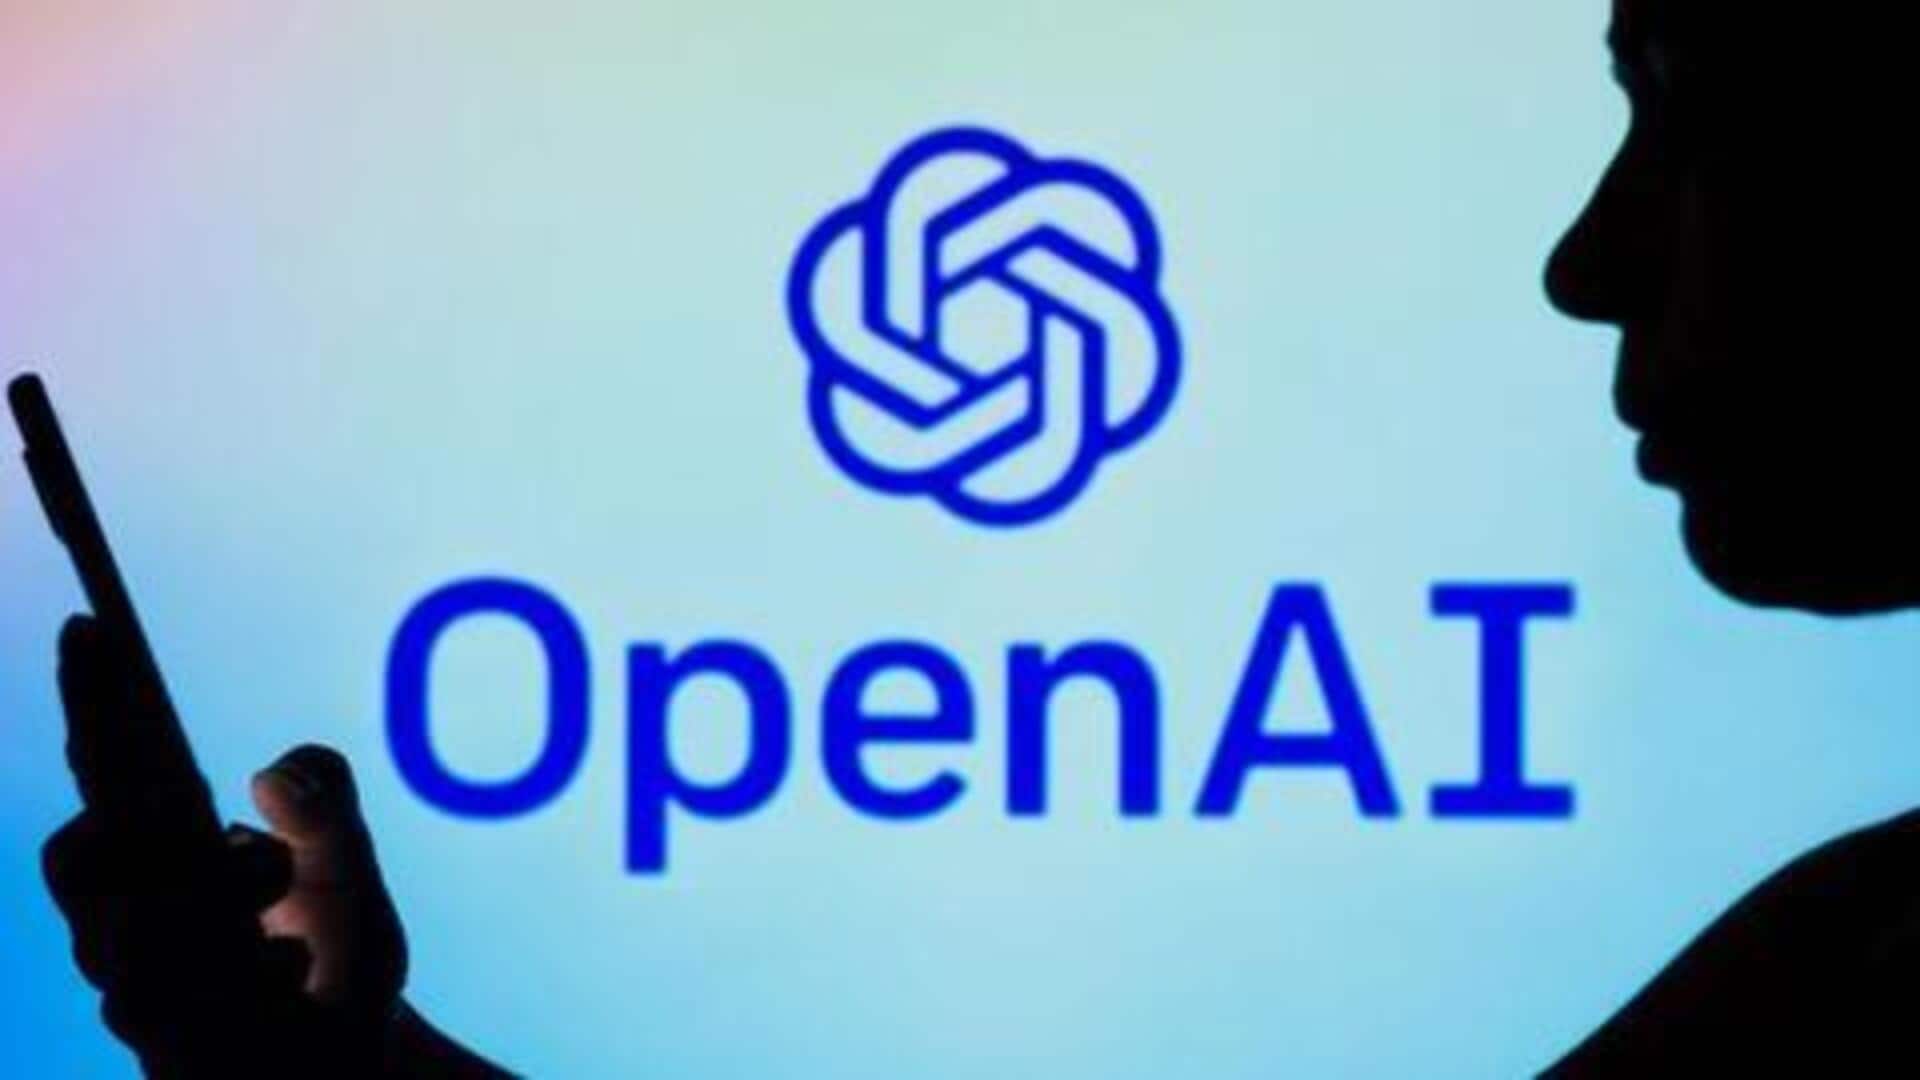 OpenAI's annual revenue doubles to $3.4 billion